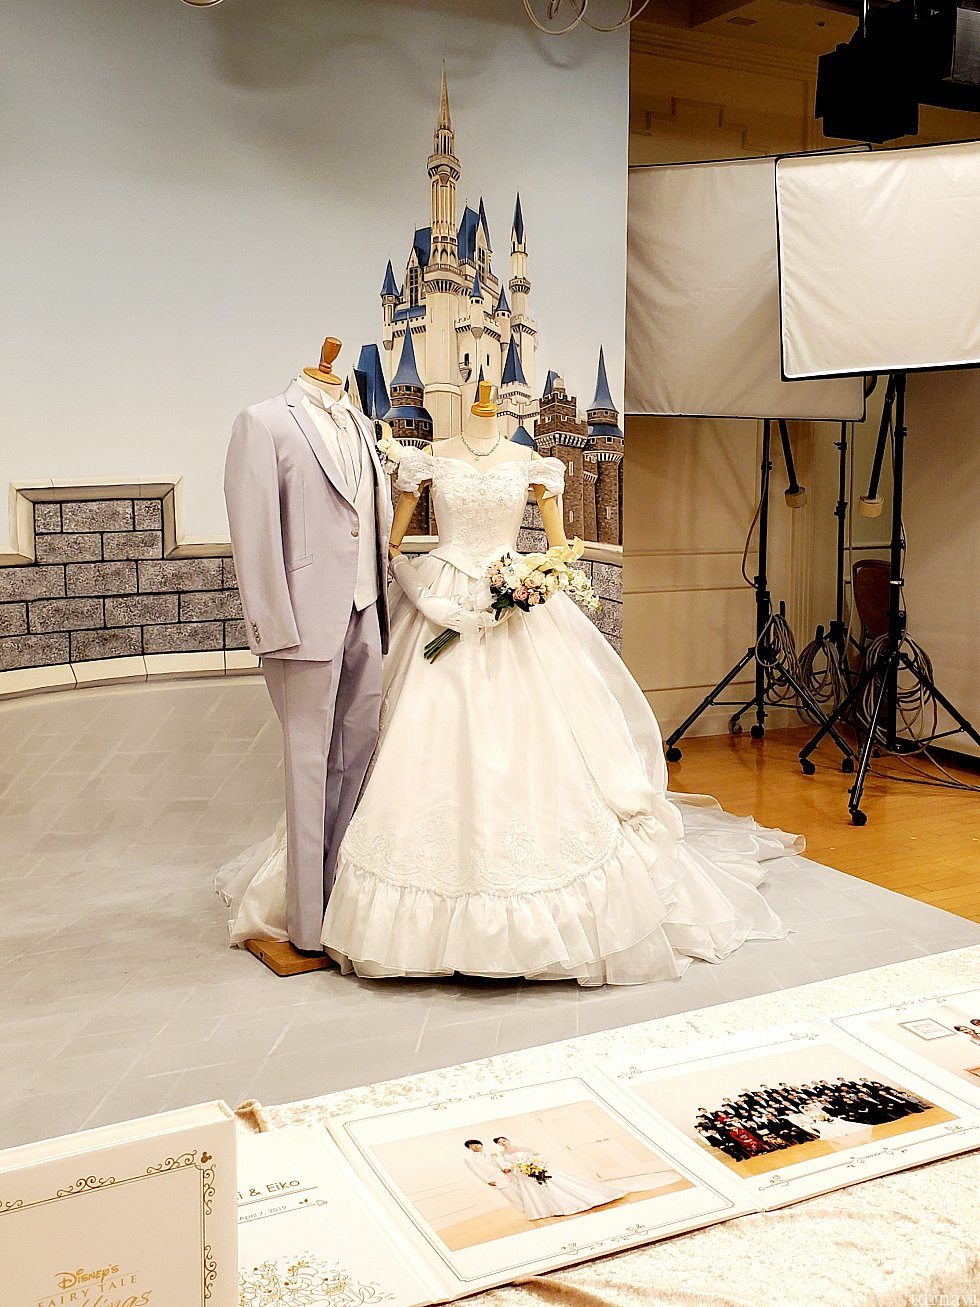 こちらは白雪姫の様な可愛いドレス🍎<br>
フォトスタジオでは、様々なウェディングプランを写真で紹介してくれます。